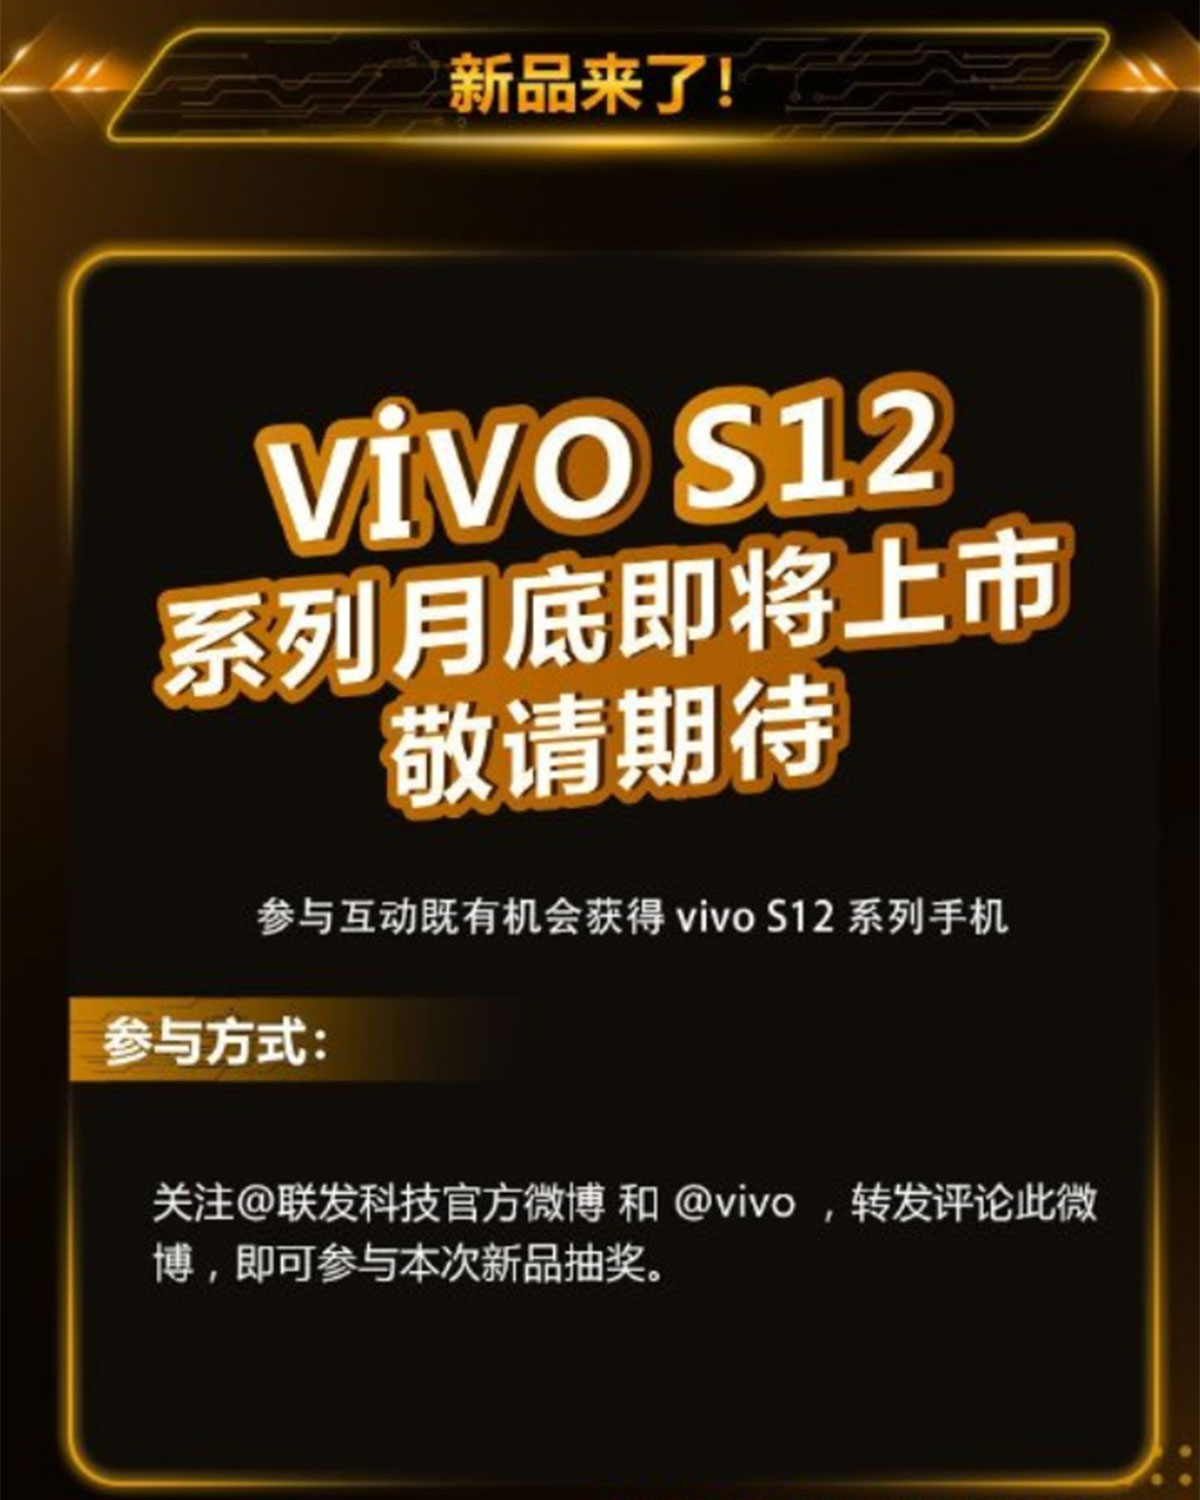 مشخصات Vivo S12